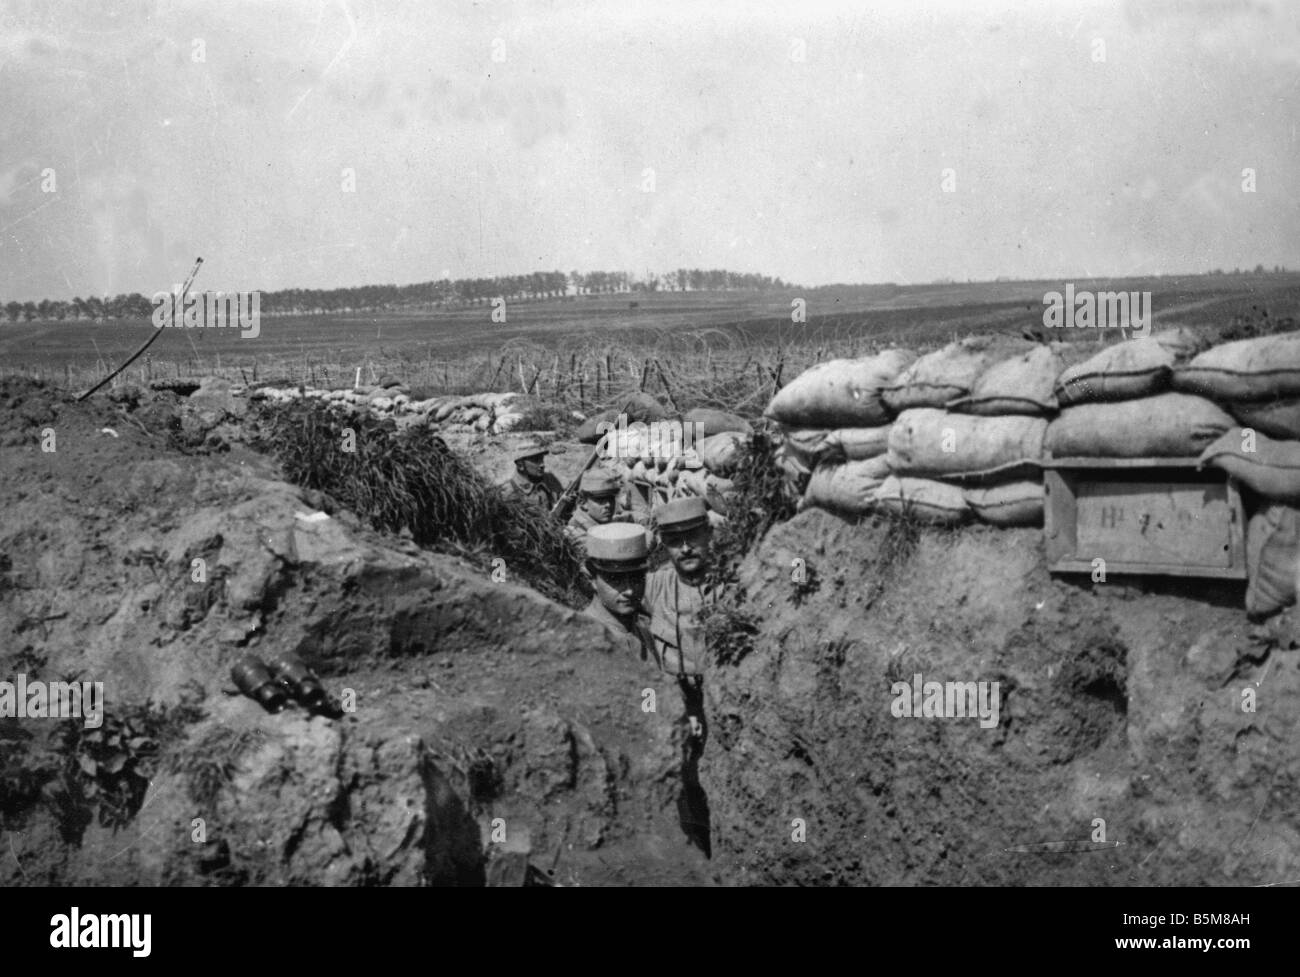 2 G55 F1 1915 14 französische Gräben Weltkrieg Geschichte Weltkrieg Frankreich Trench Warfare französischen Graben Positionen nahe Loivre Champ Stockfoto